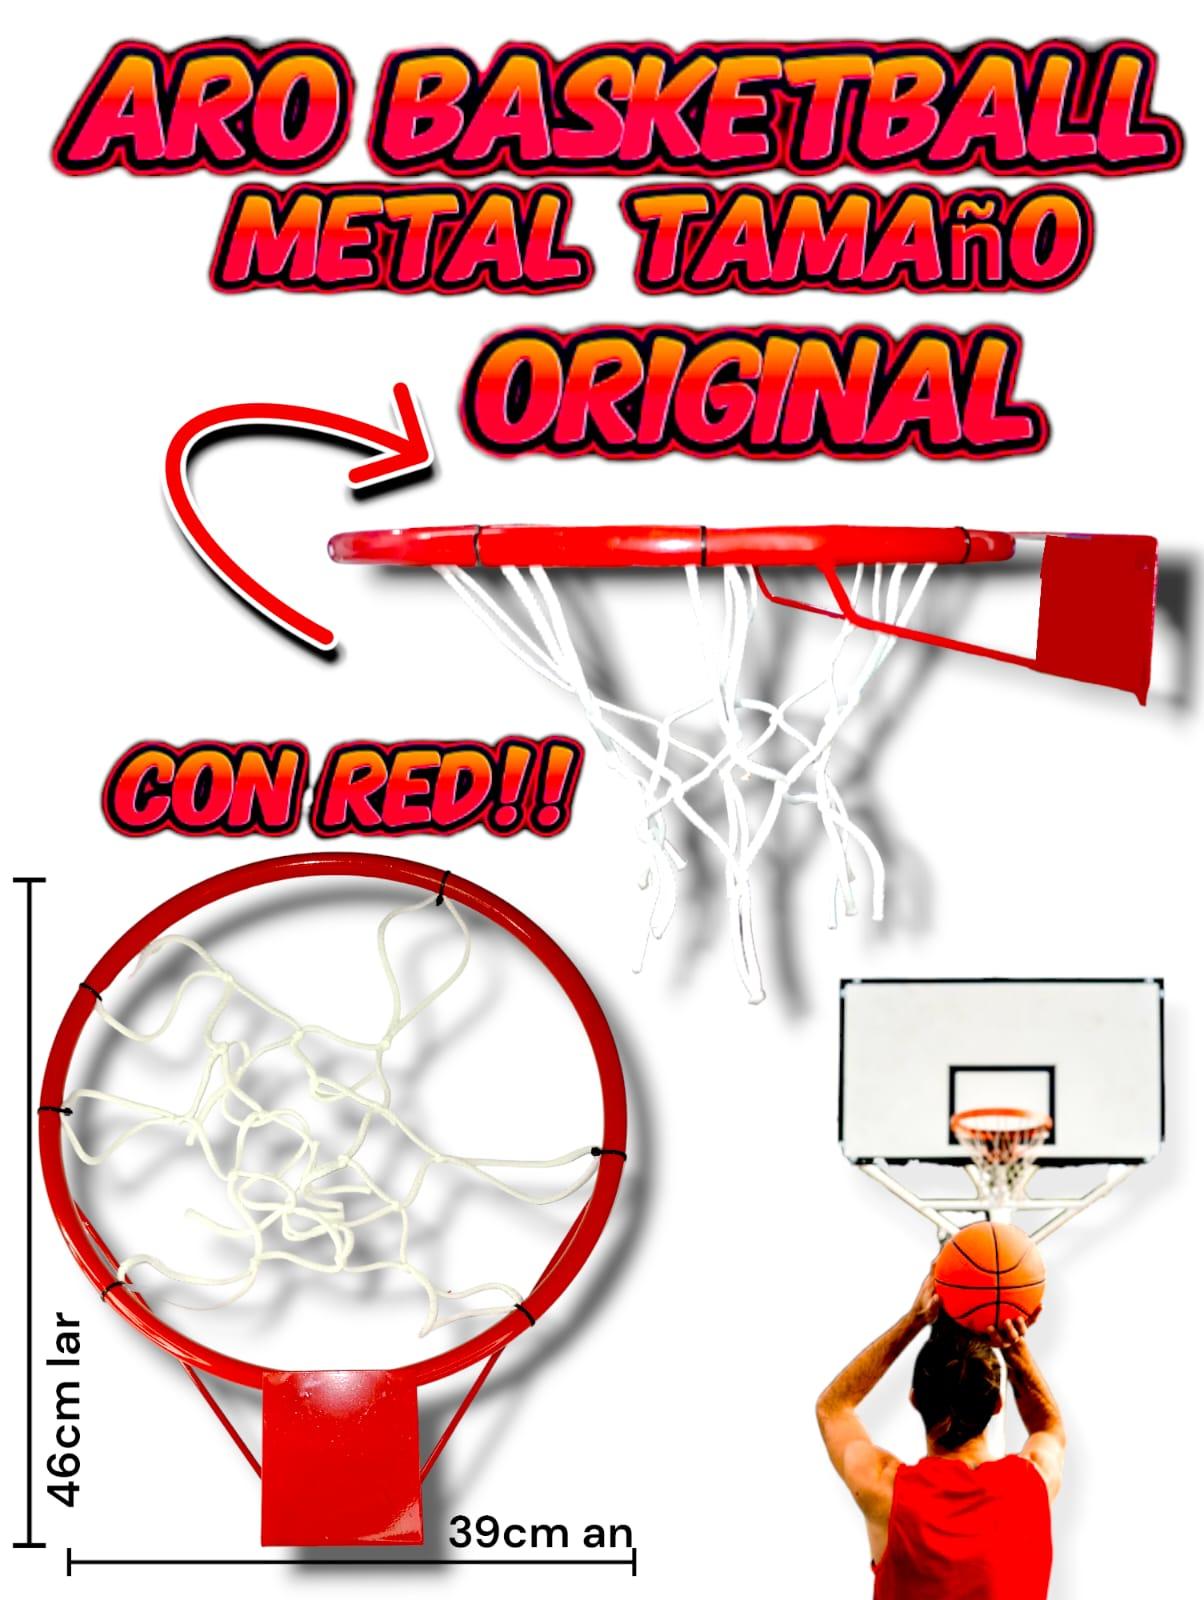 Aro de basket metal tamaño original con red